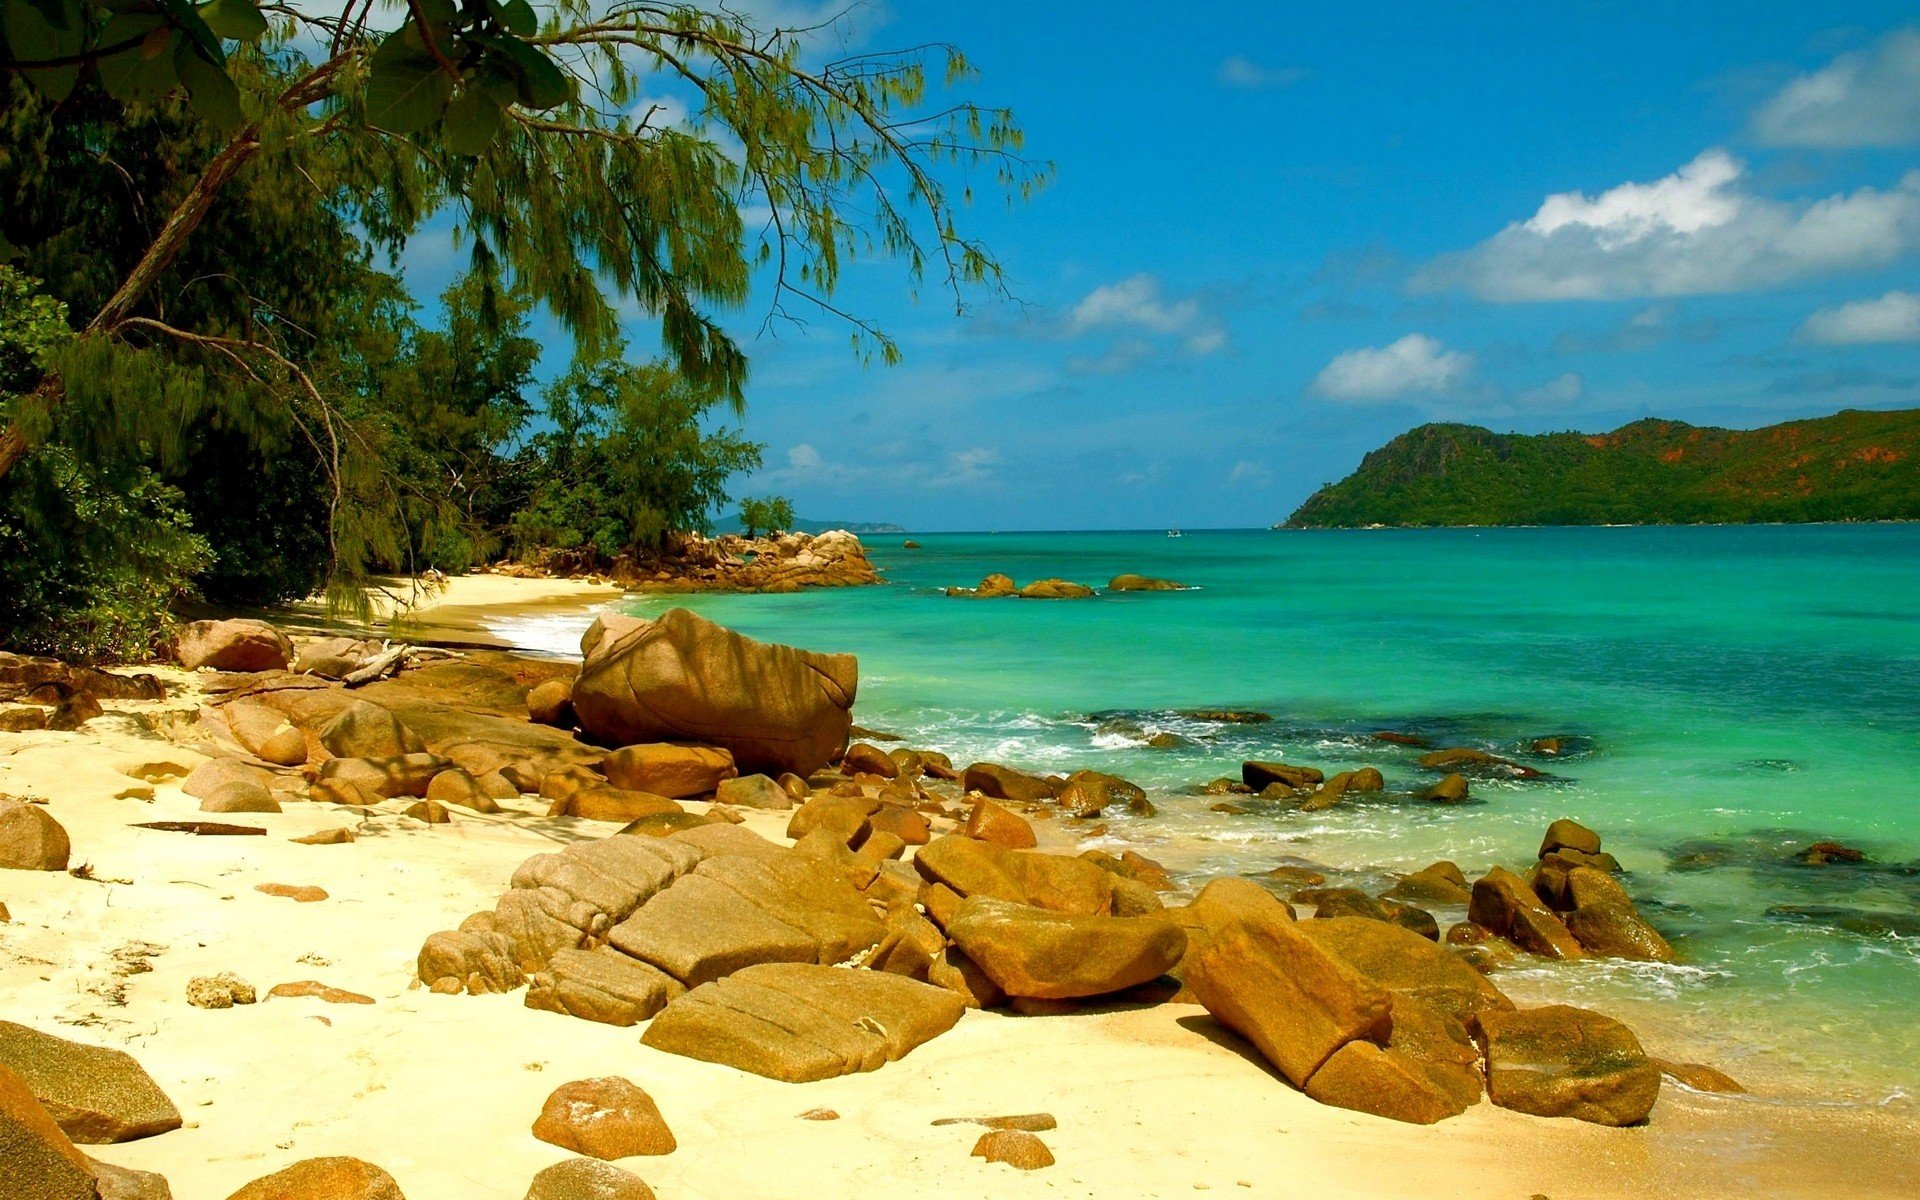 Бесплатное видео дикого пляжа. Фернандо-де-Норонья Бразилия. Тропический пляж.